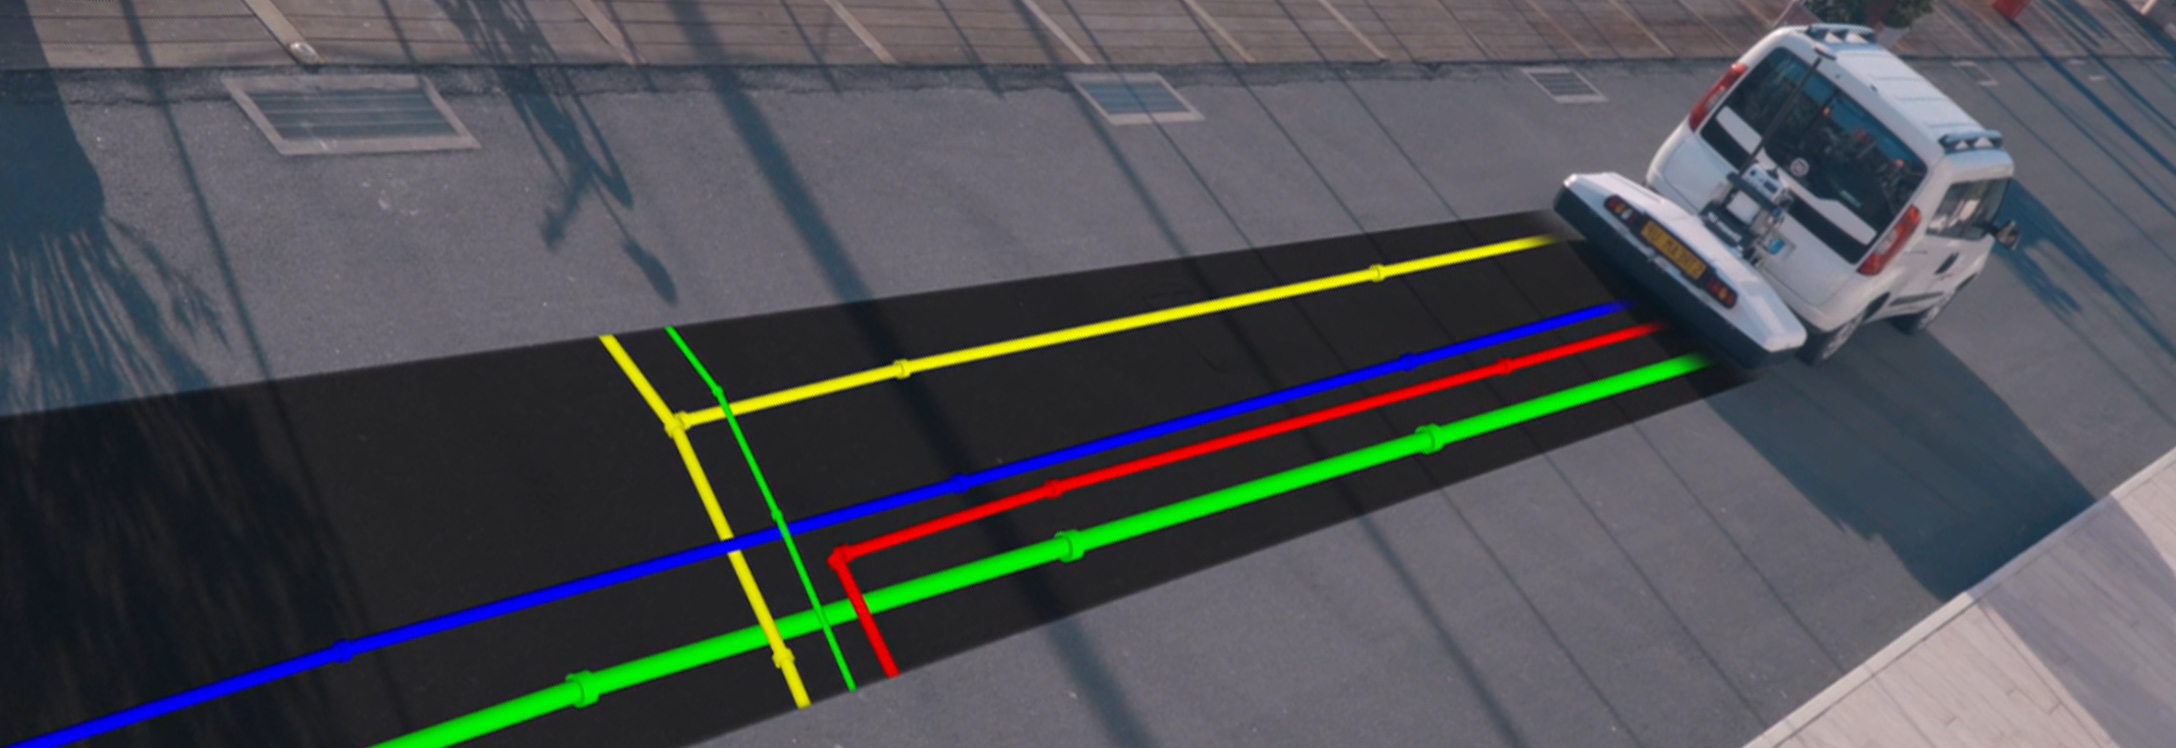 Tuyaux colorés à rendu graphique découverts pendant que la camionnette passe avec un radar attaché pénétrant dans le sol